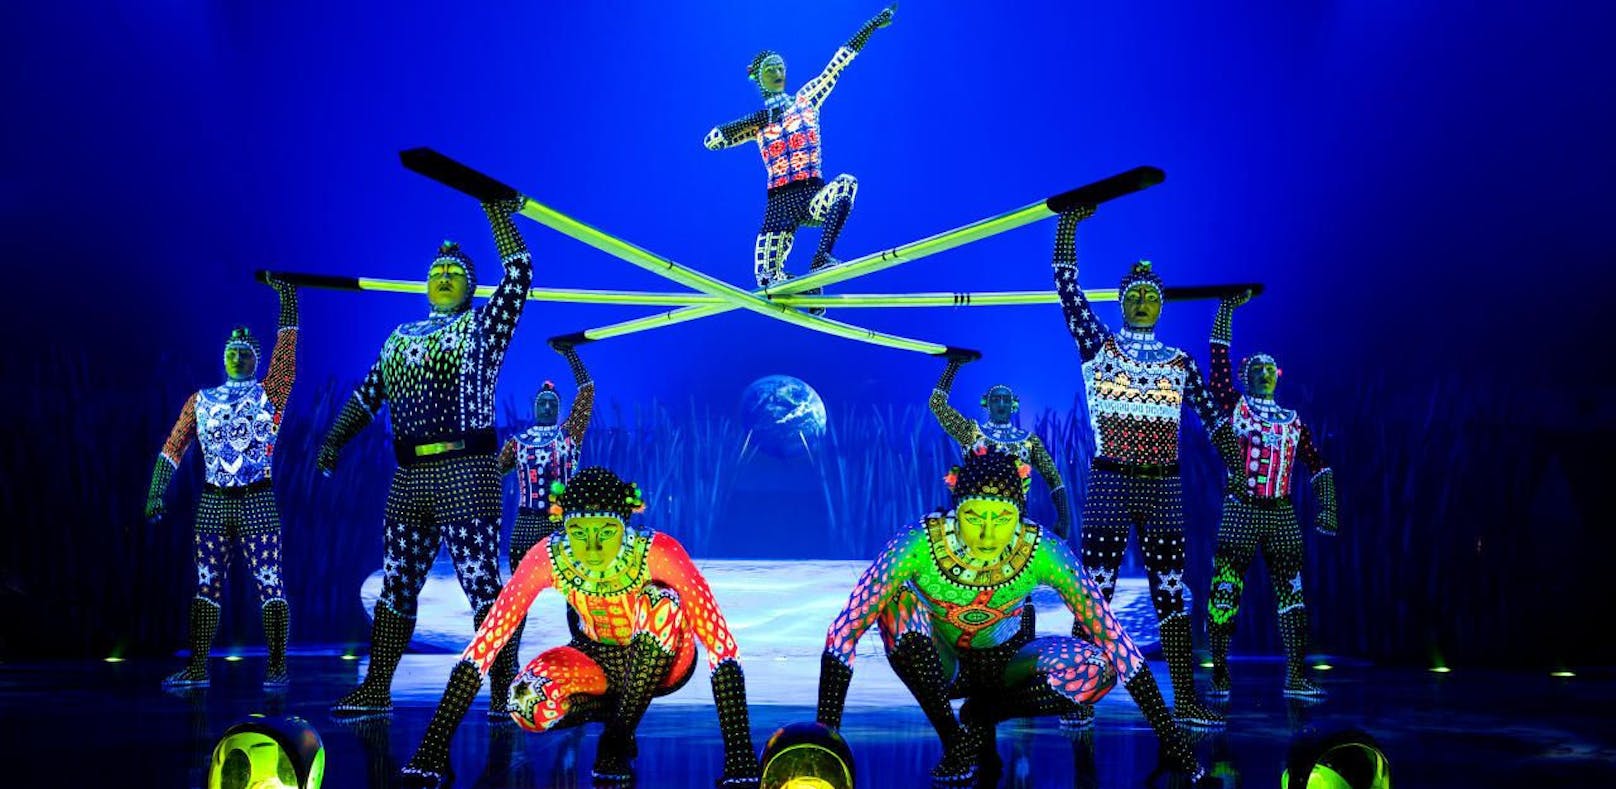 Backstage-Action beim "Cirque du Soleil" in Paris